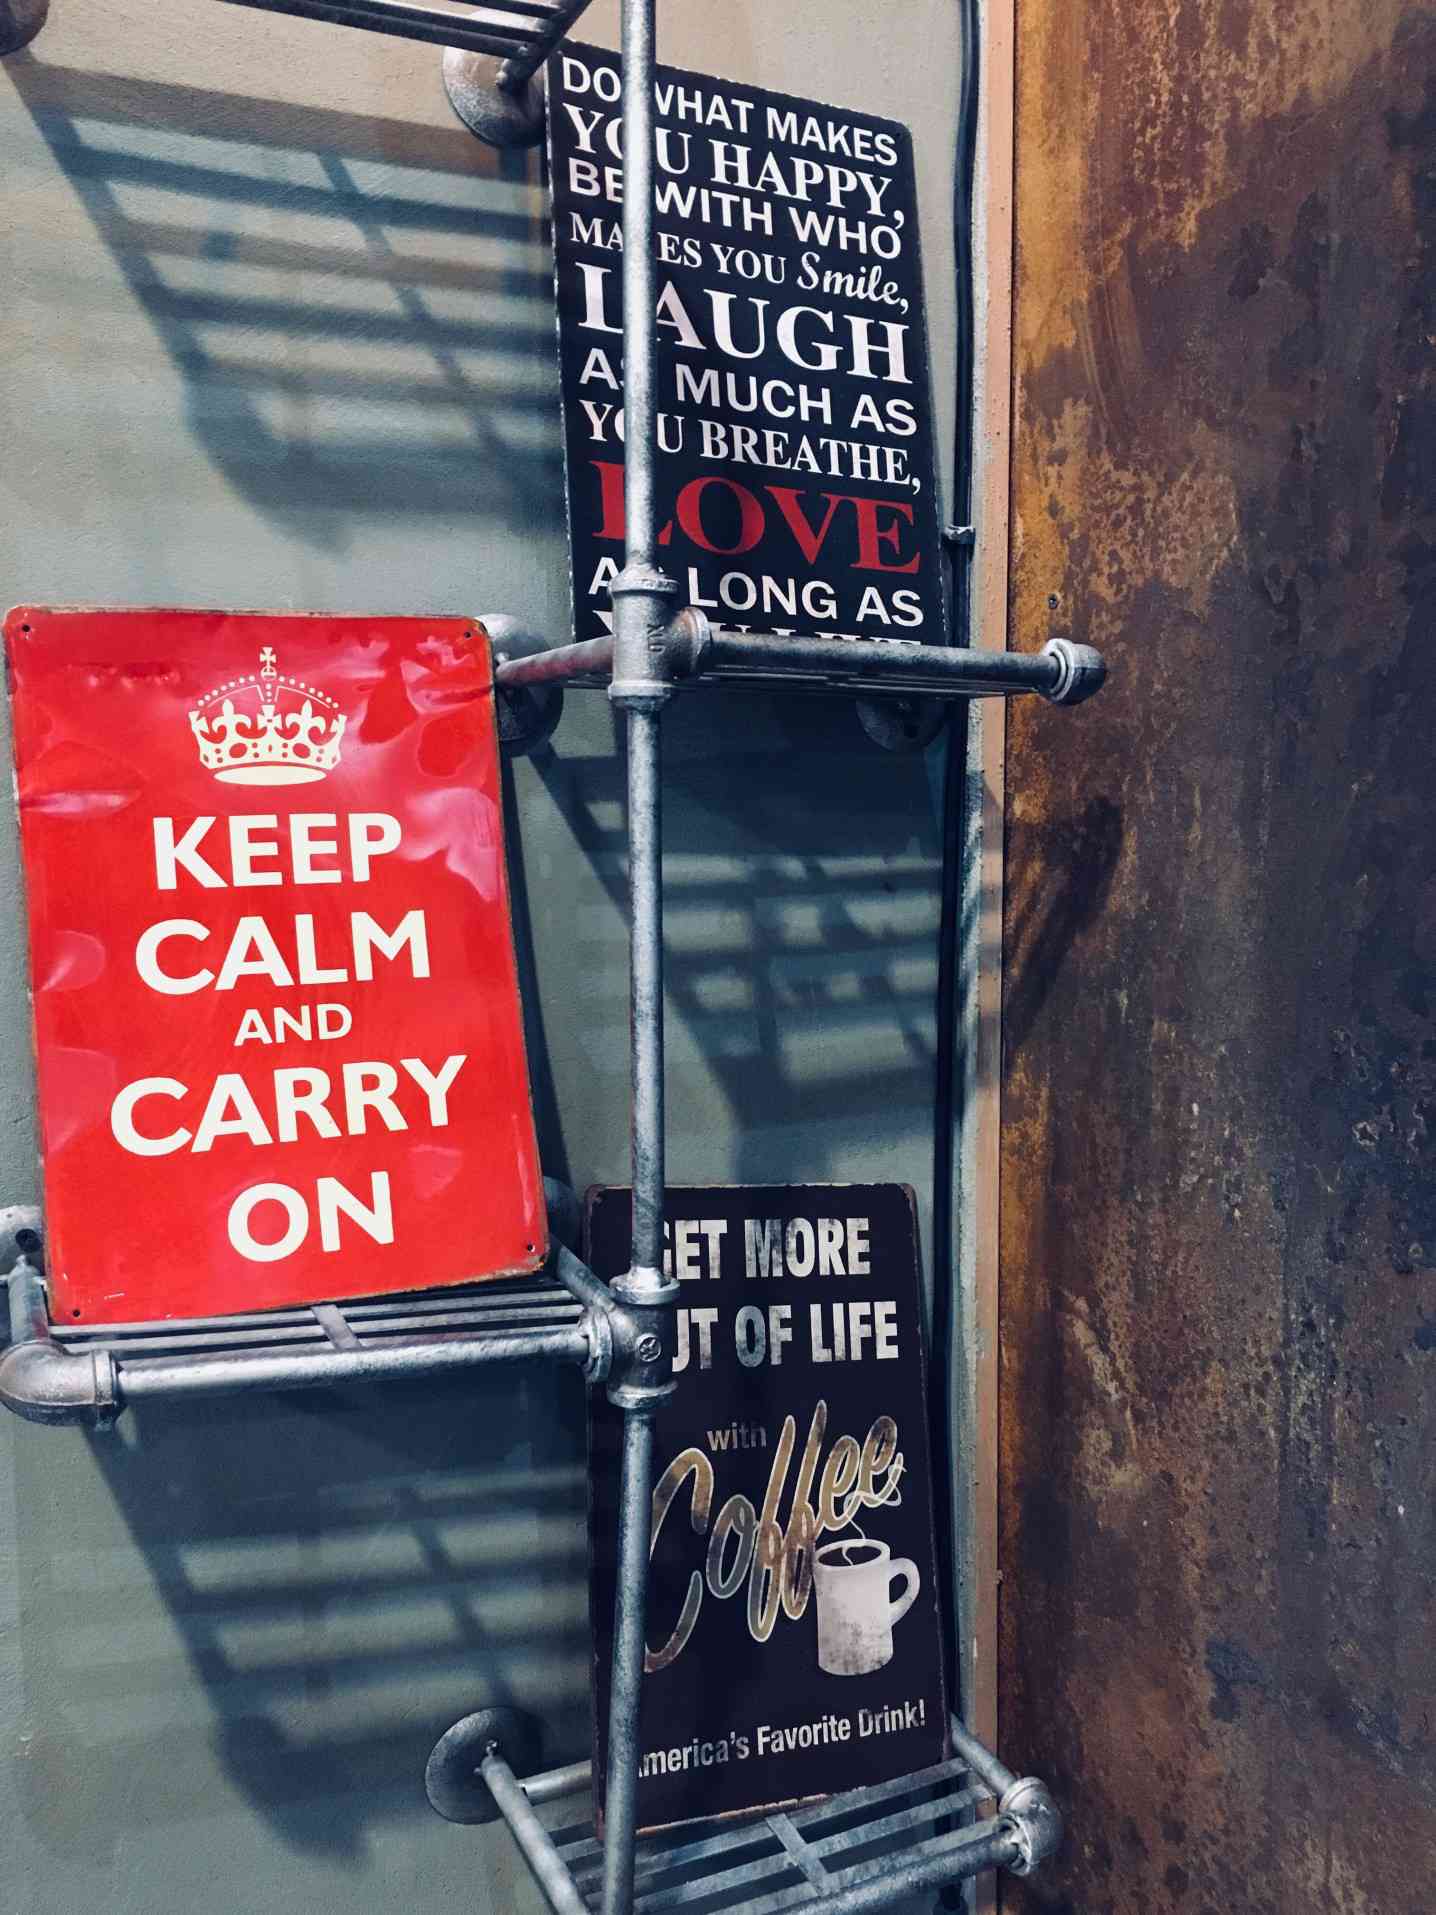 Cartel rojo de Keep Calm and Carry On en una estantería con otros carteles.